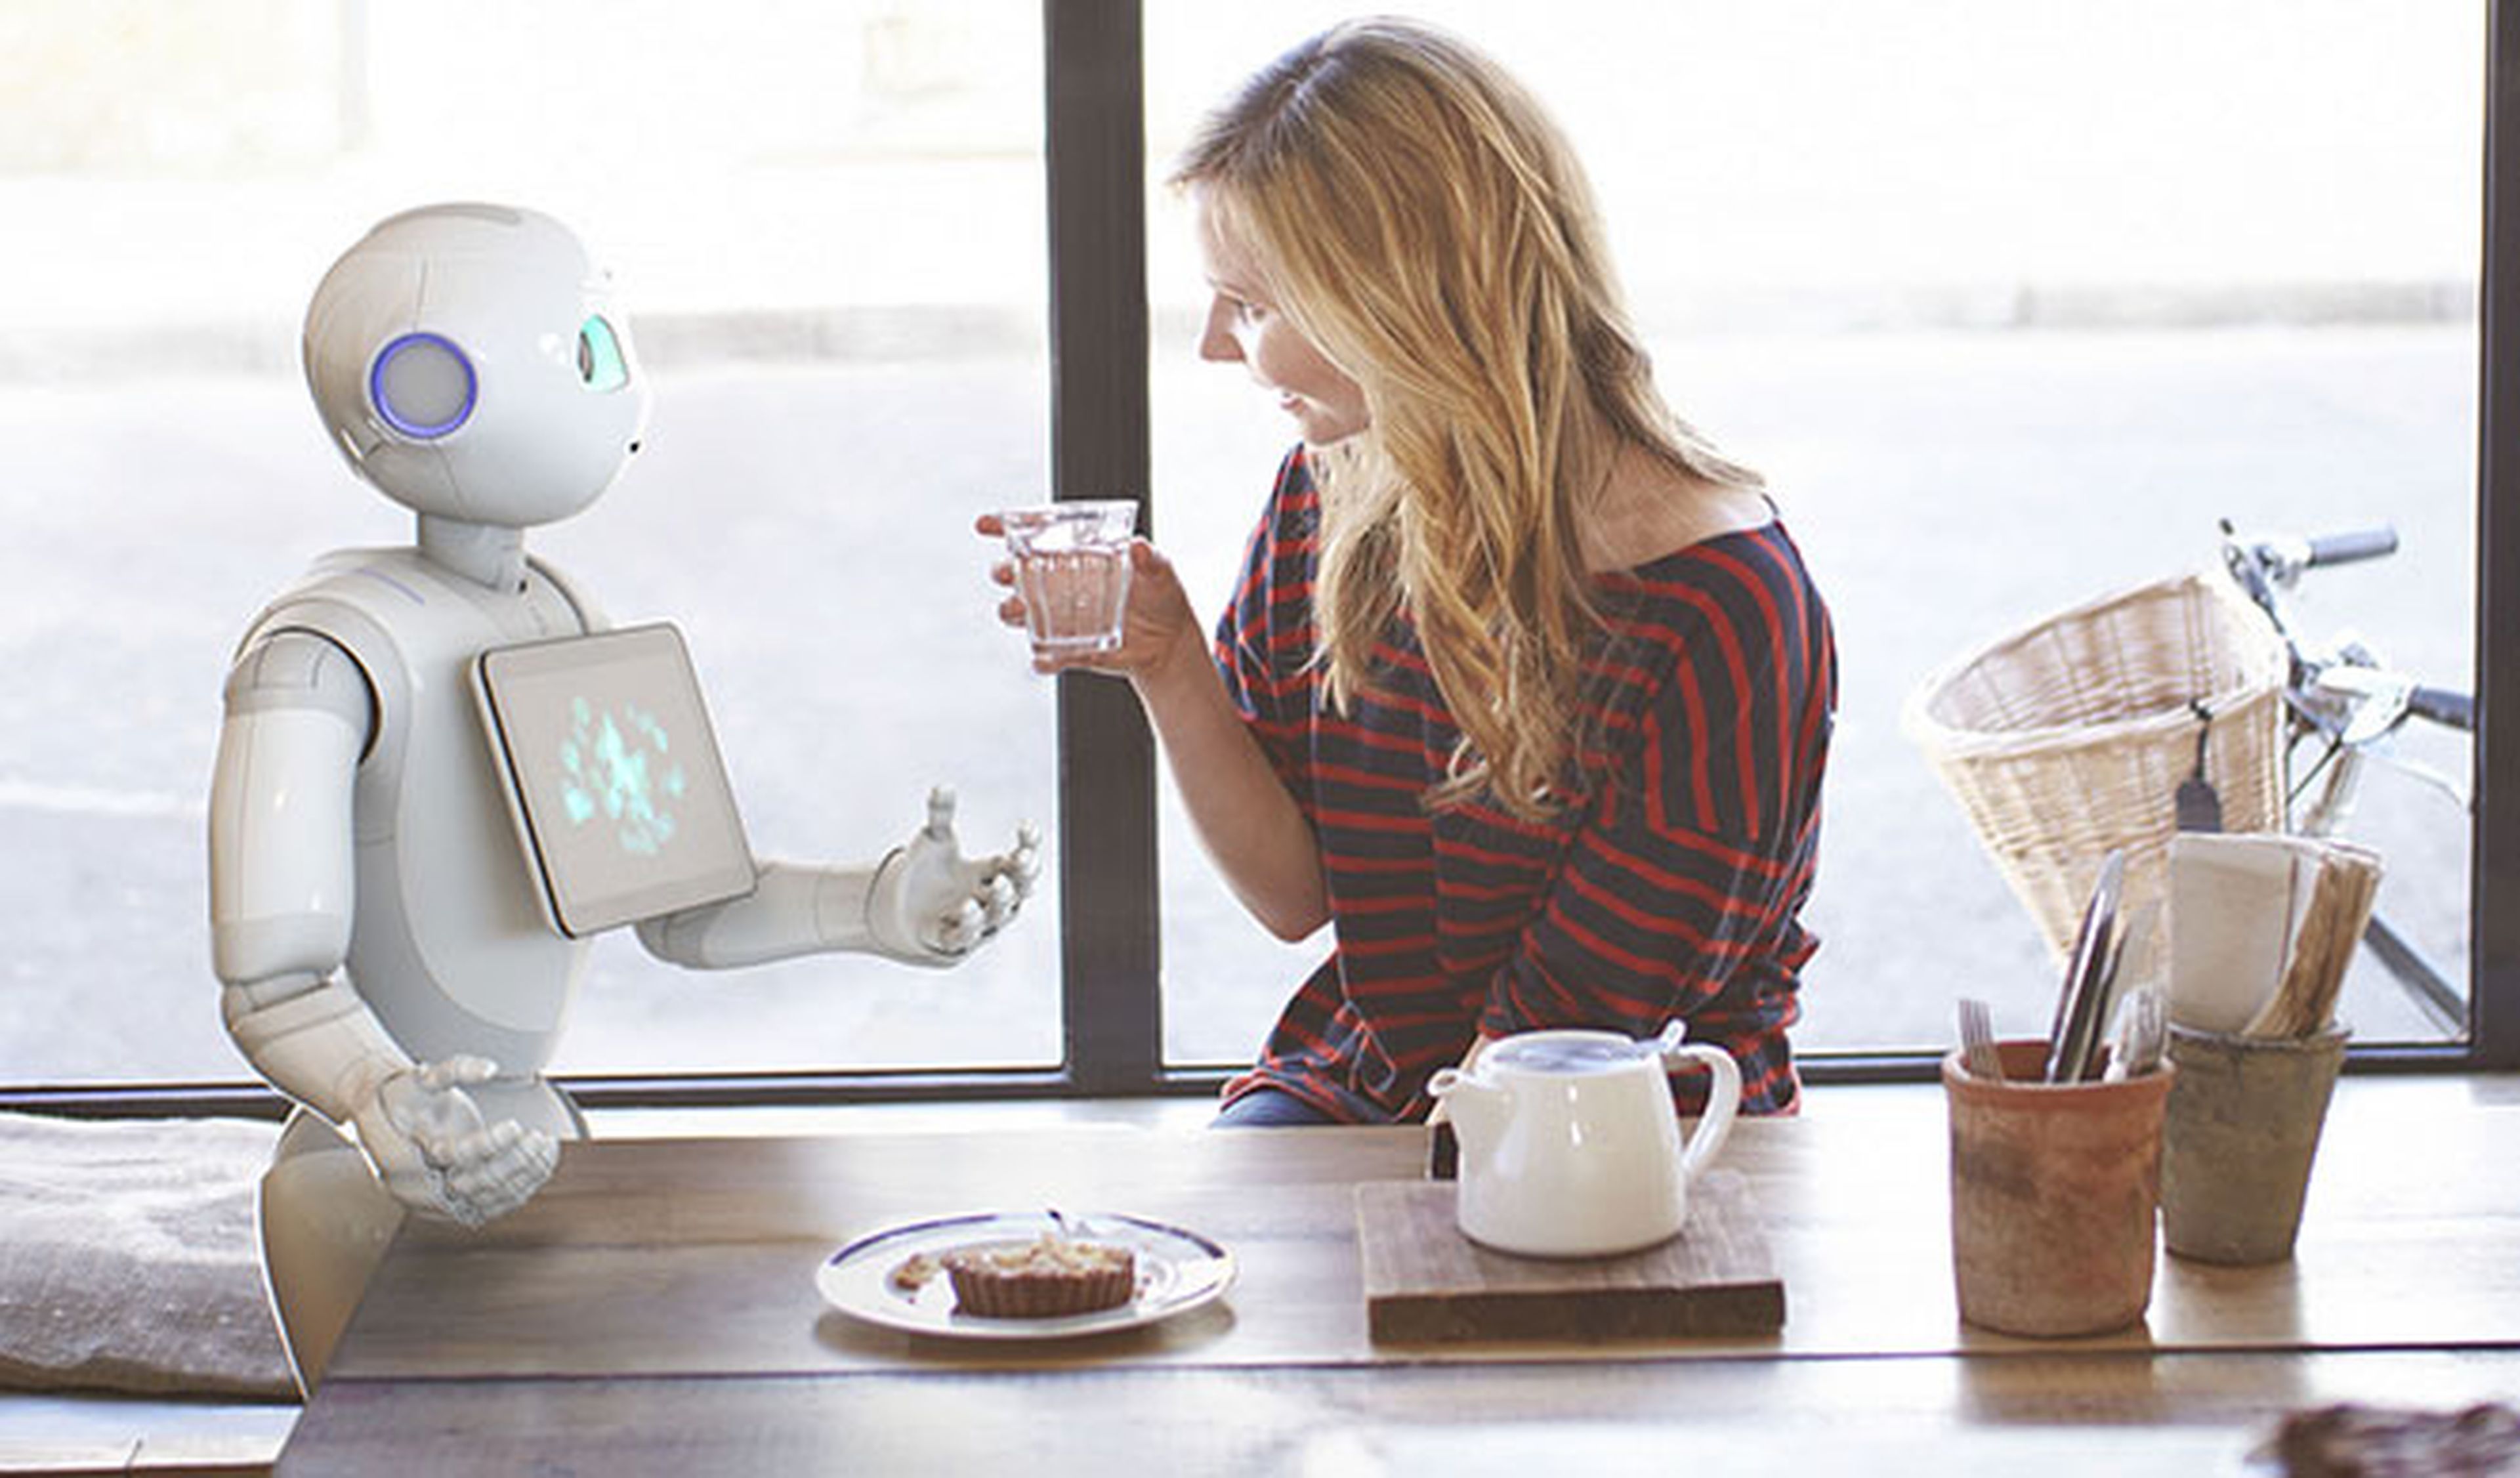 El robot que se comunica con las personas arrasa en Japón